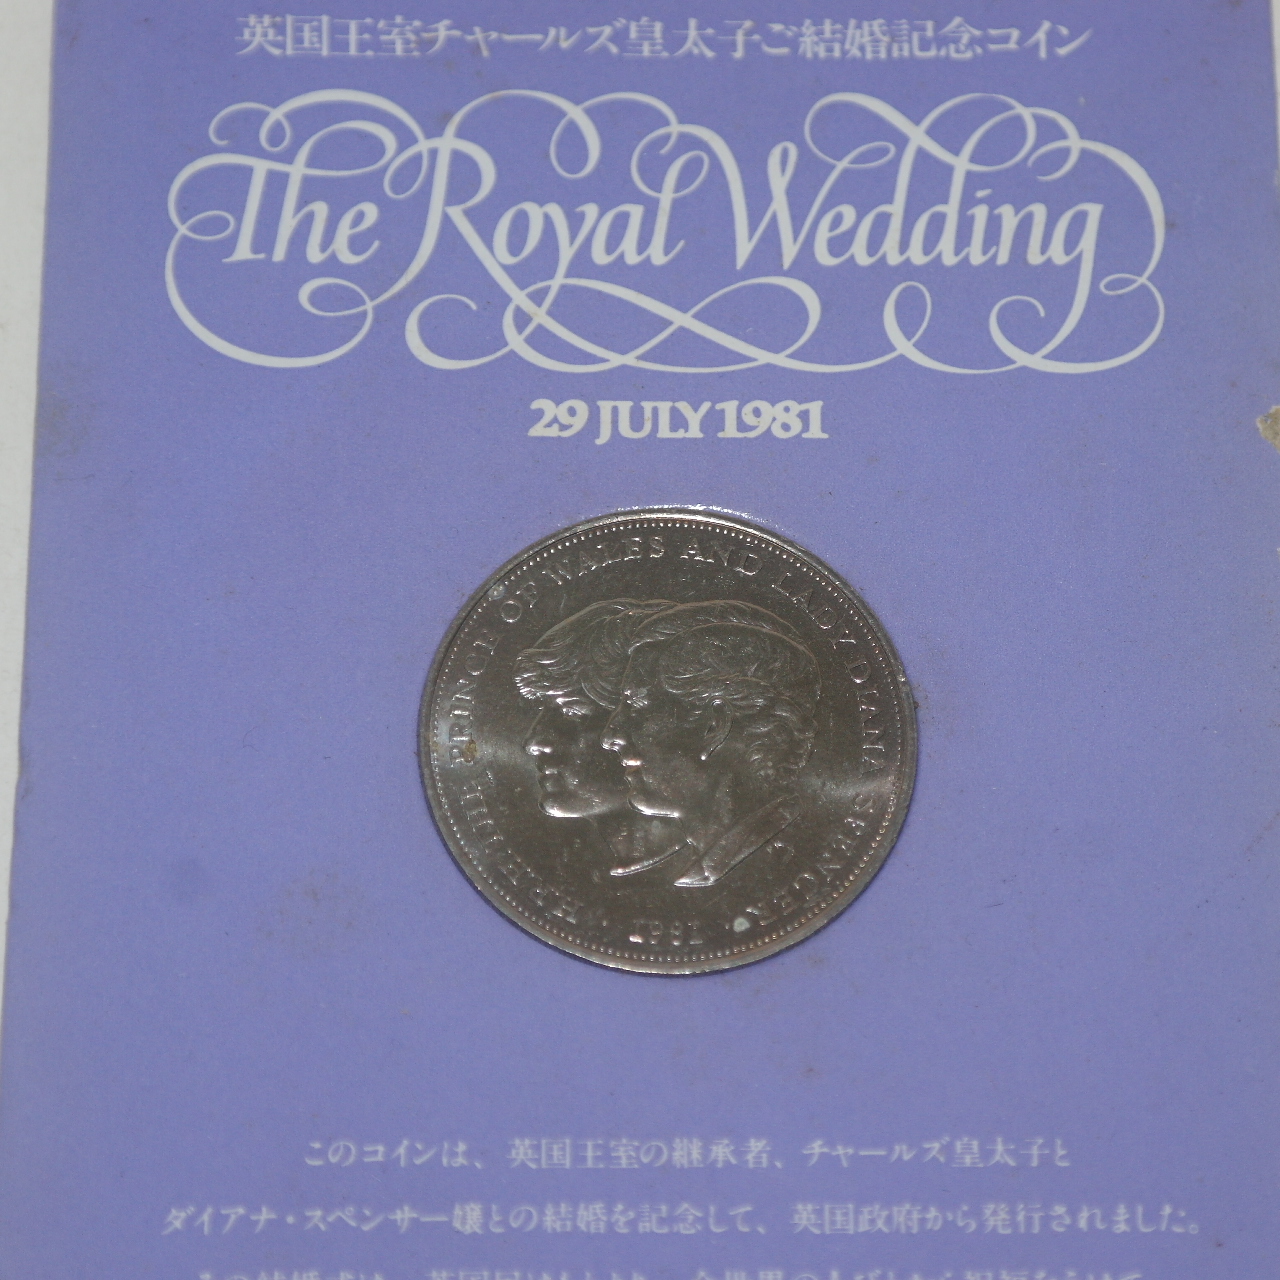 1981년 영국왕실 기념주화